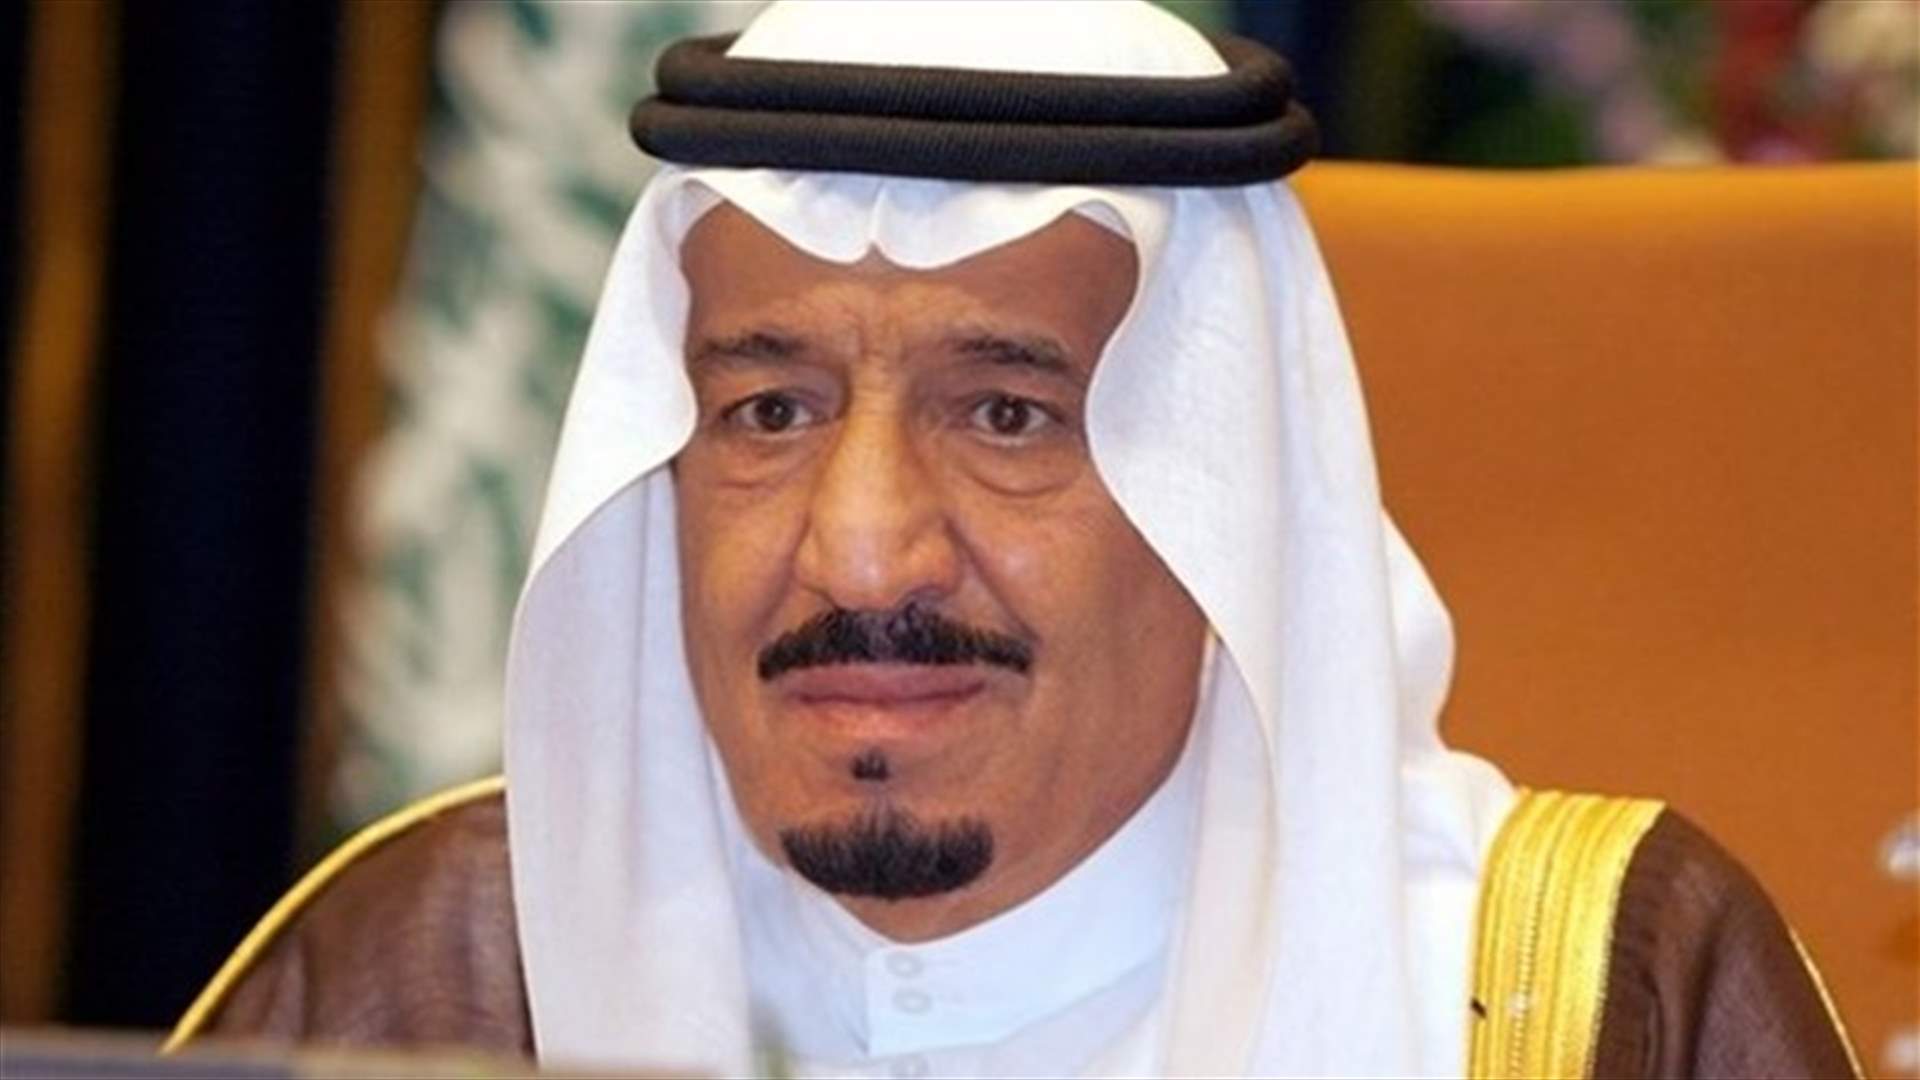 الملك سلمان هنّأ عون بانتخابه رئيساً: السعودية مهتمة بلبنان واللبنانيين